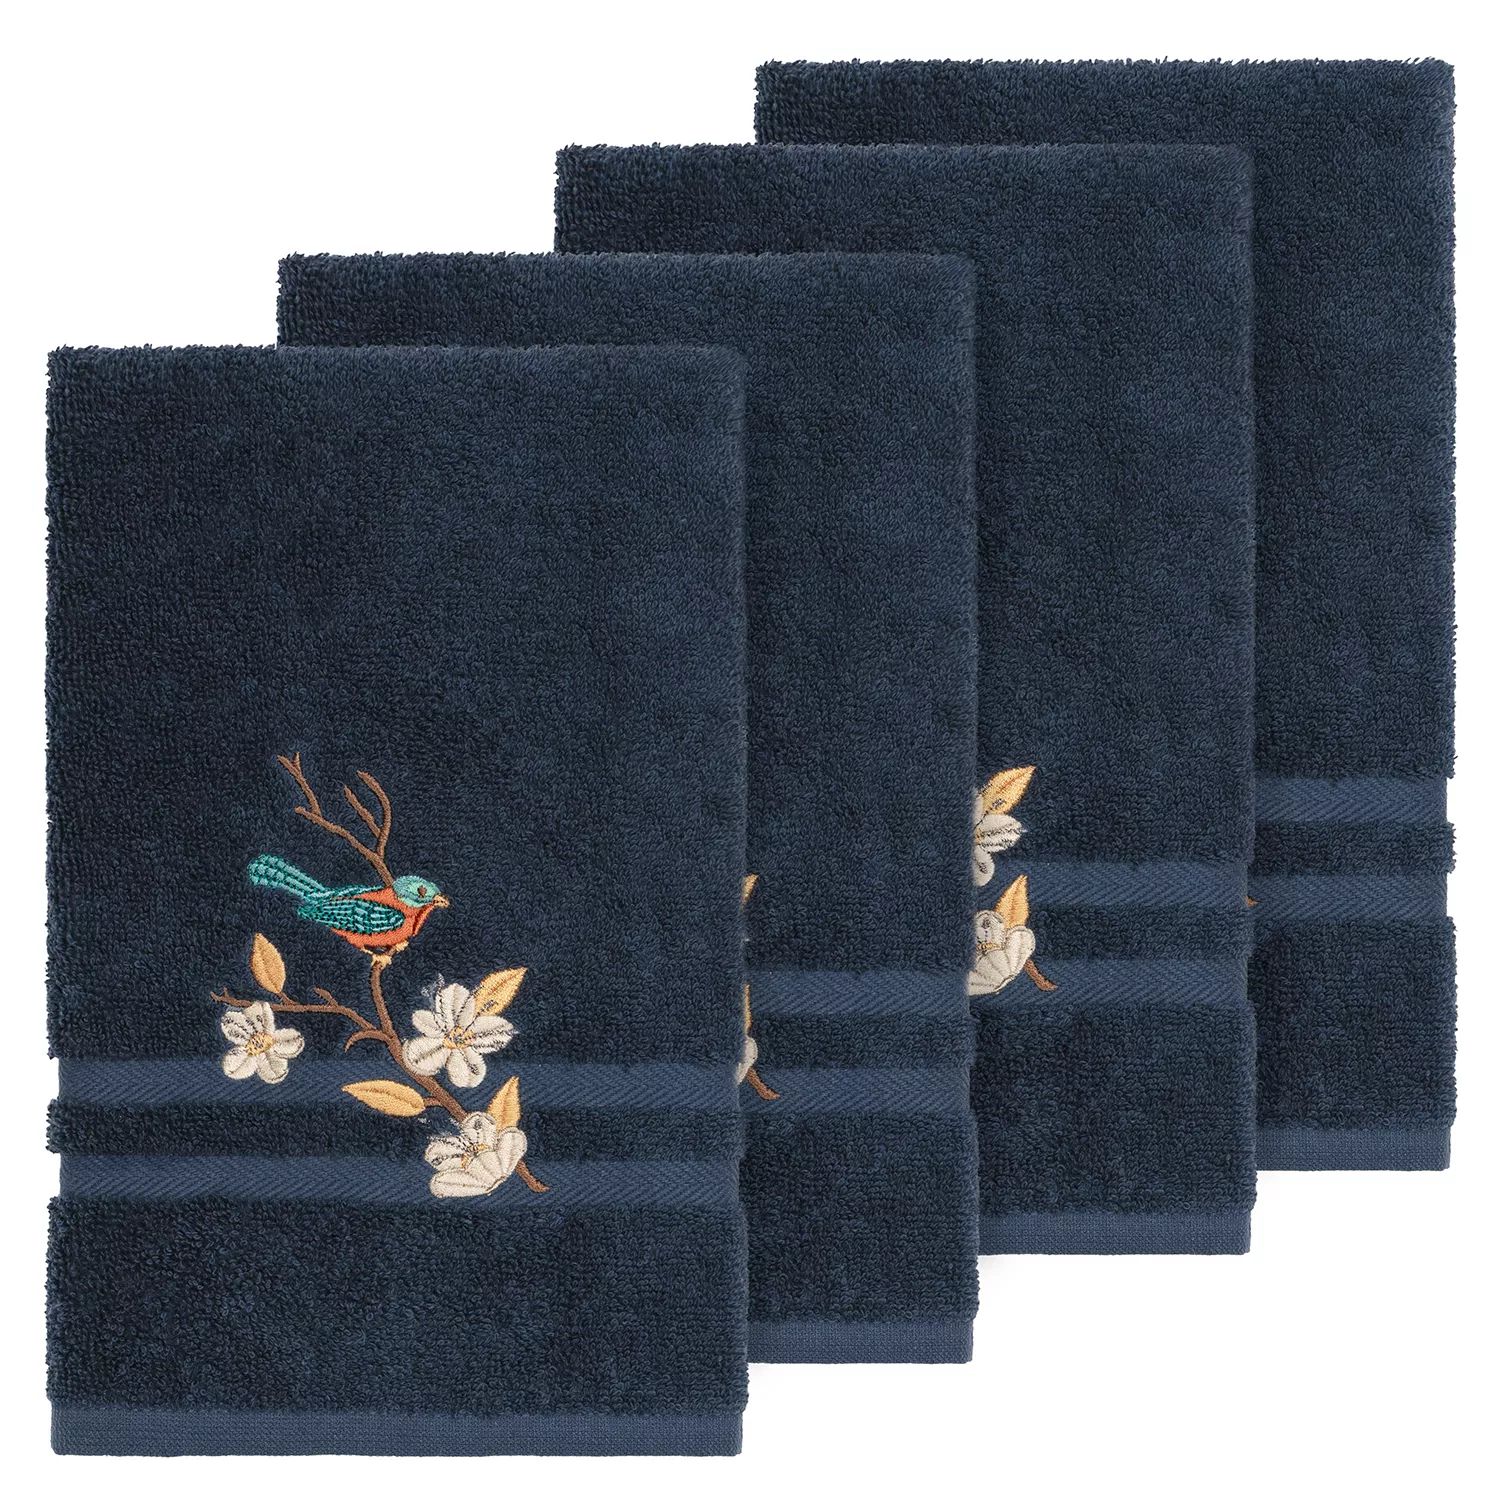 Linum Домашний текстиль Турецкий хлопок Весенний украшенный набор полотенец для рук, бежевый